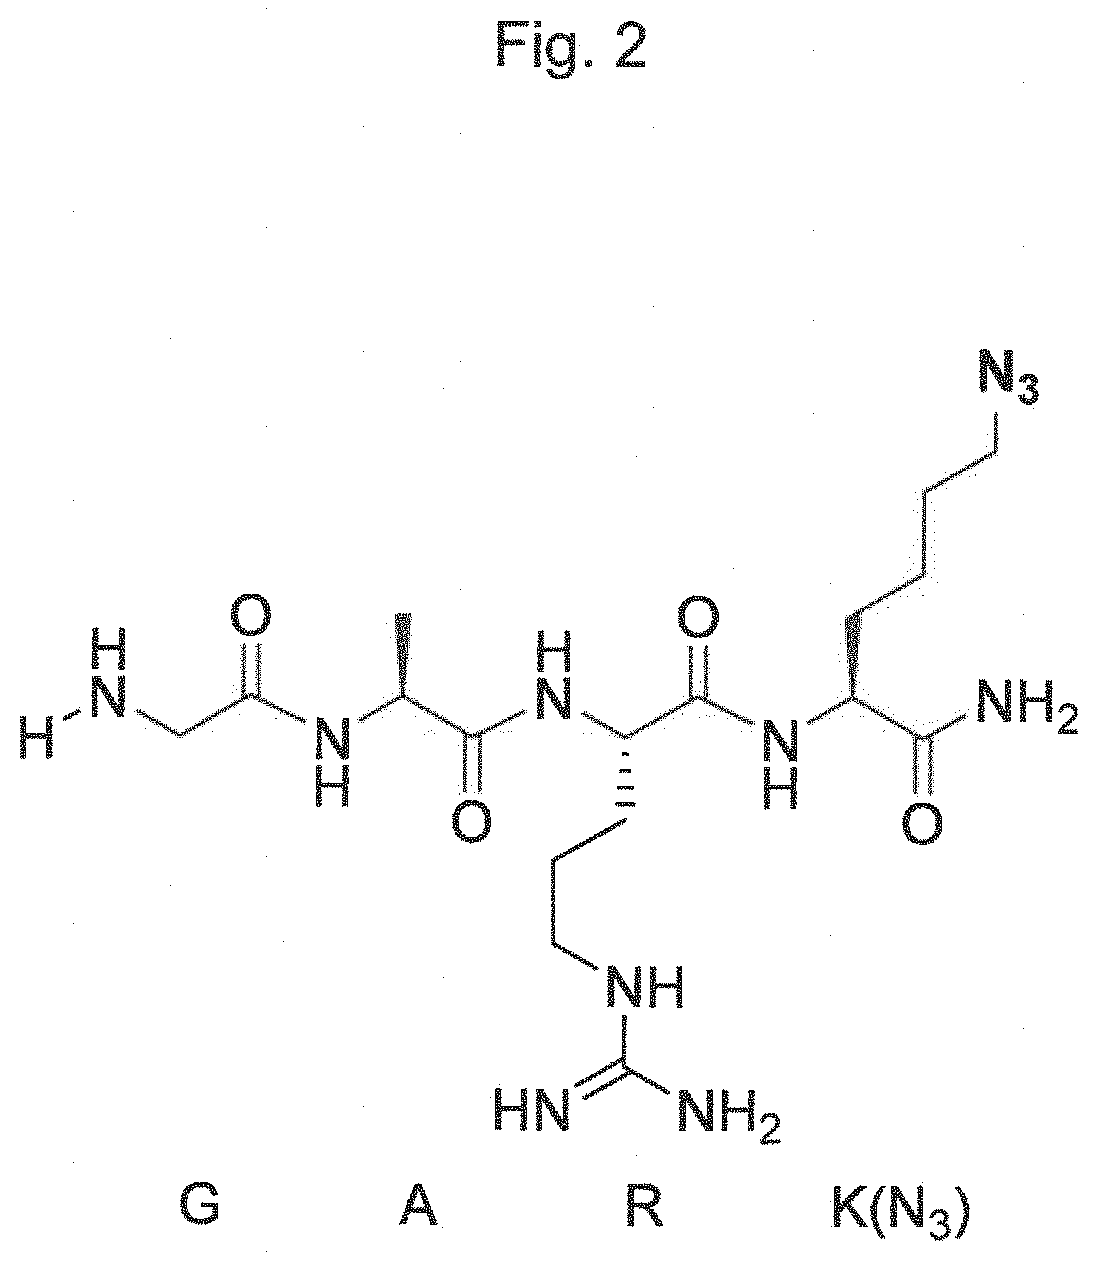 Transglutaminase conjugation method with a glycine based linker